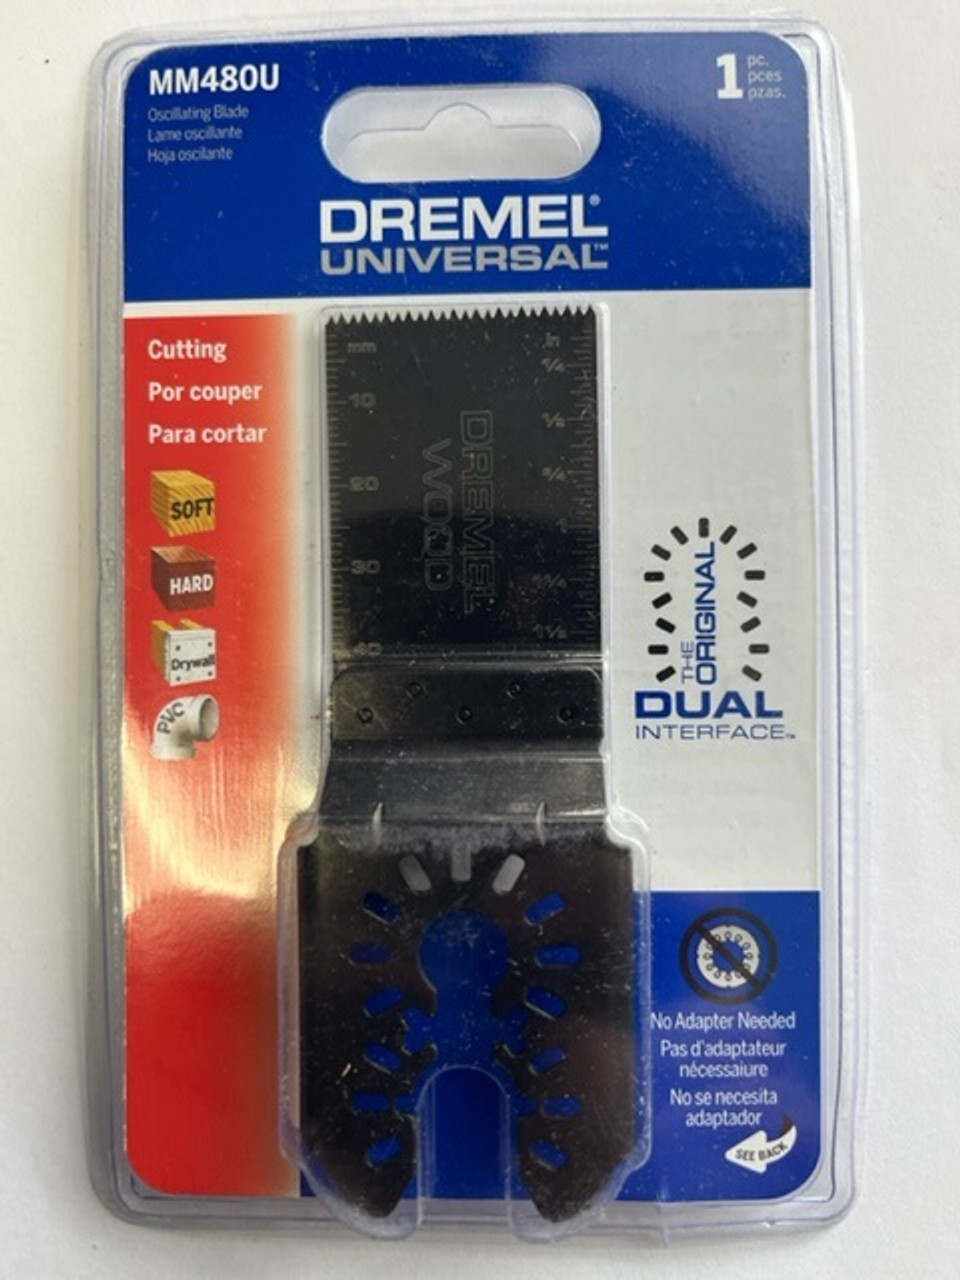 Dremel MM480U 1-5/8 in. Universal Wood Flush Cut Blade